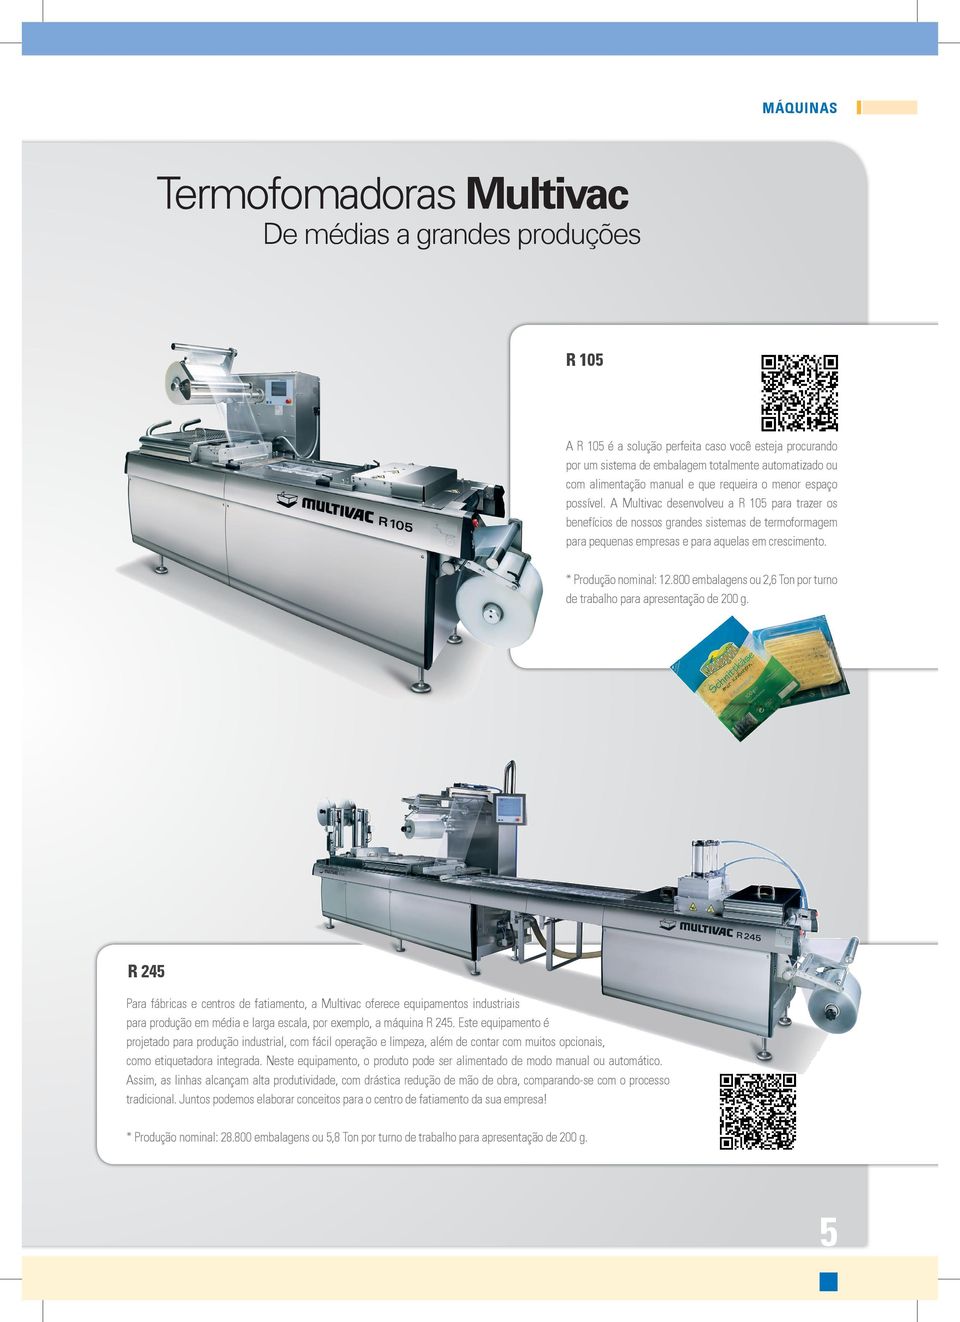 A Multivac desenvolveu a R 105 para trazer os benefícios de nossos grandes sistemas de termoformagem para pequenas empresas e para aquelas em crescimento. * Produção nominal: 12.